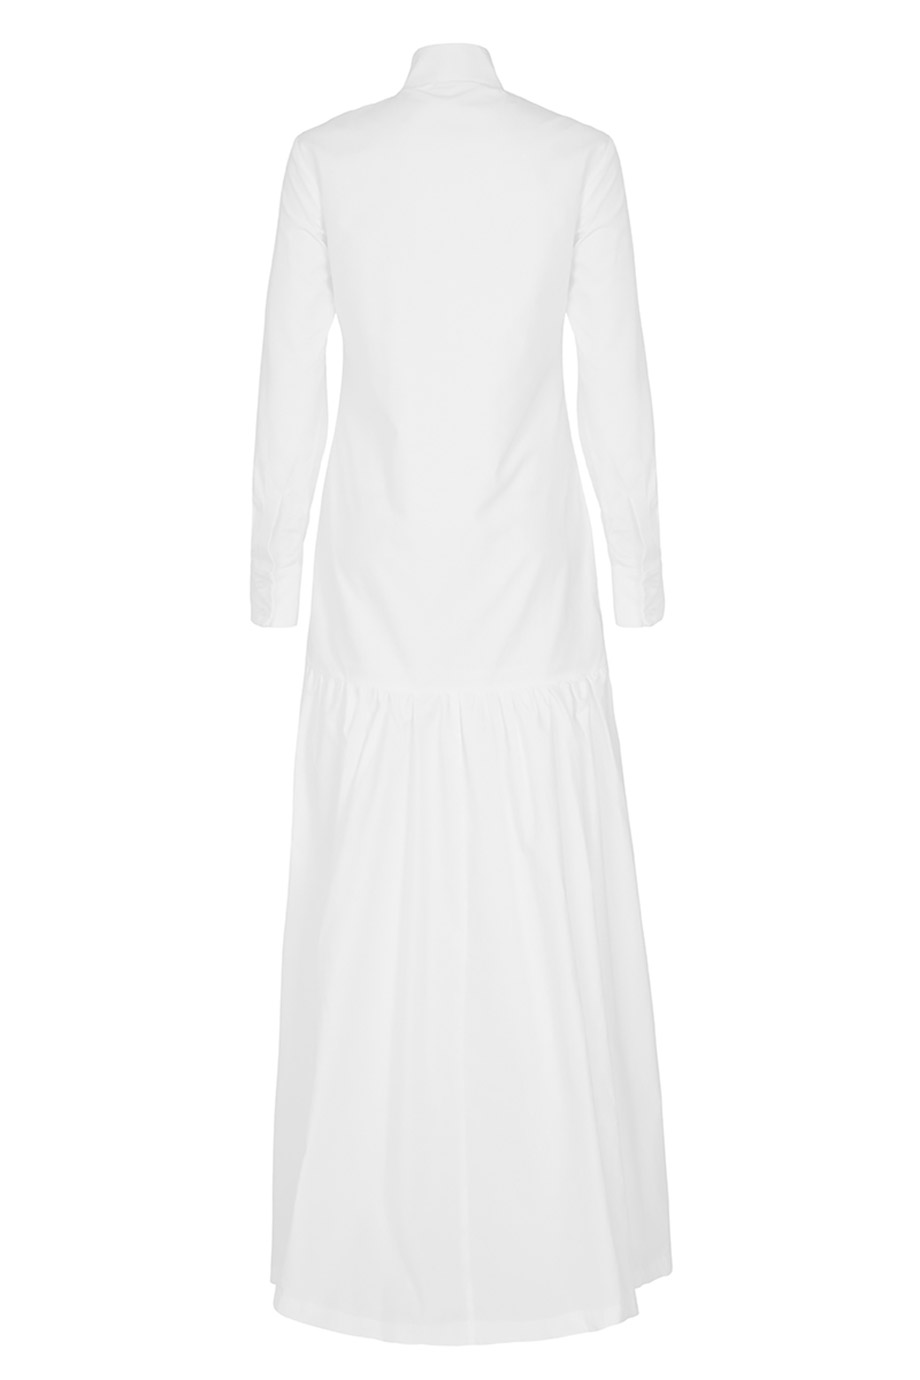 THE BARONESS DRESS - WHITE - Diana Kotb | Diana Kotb